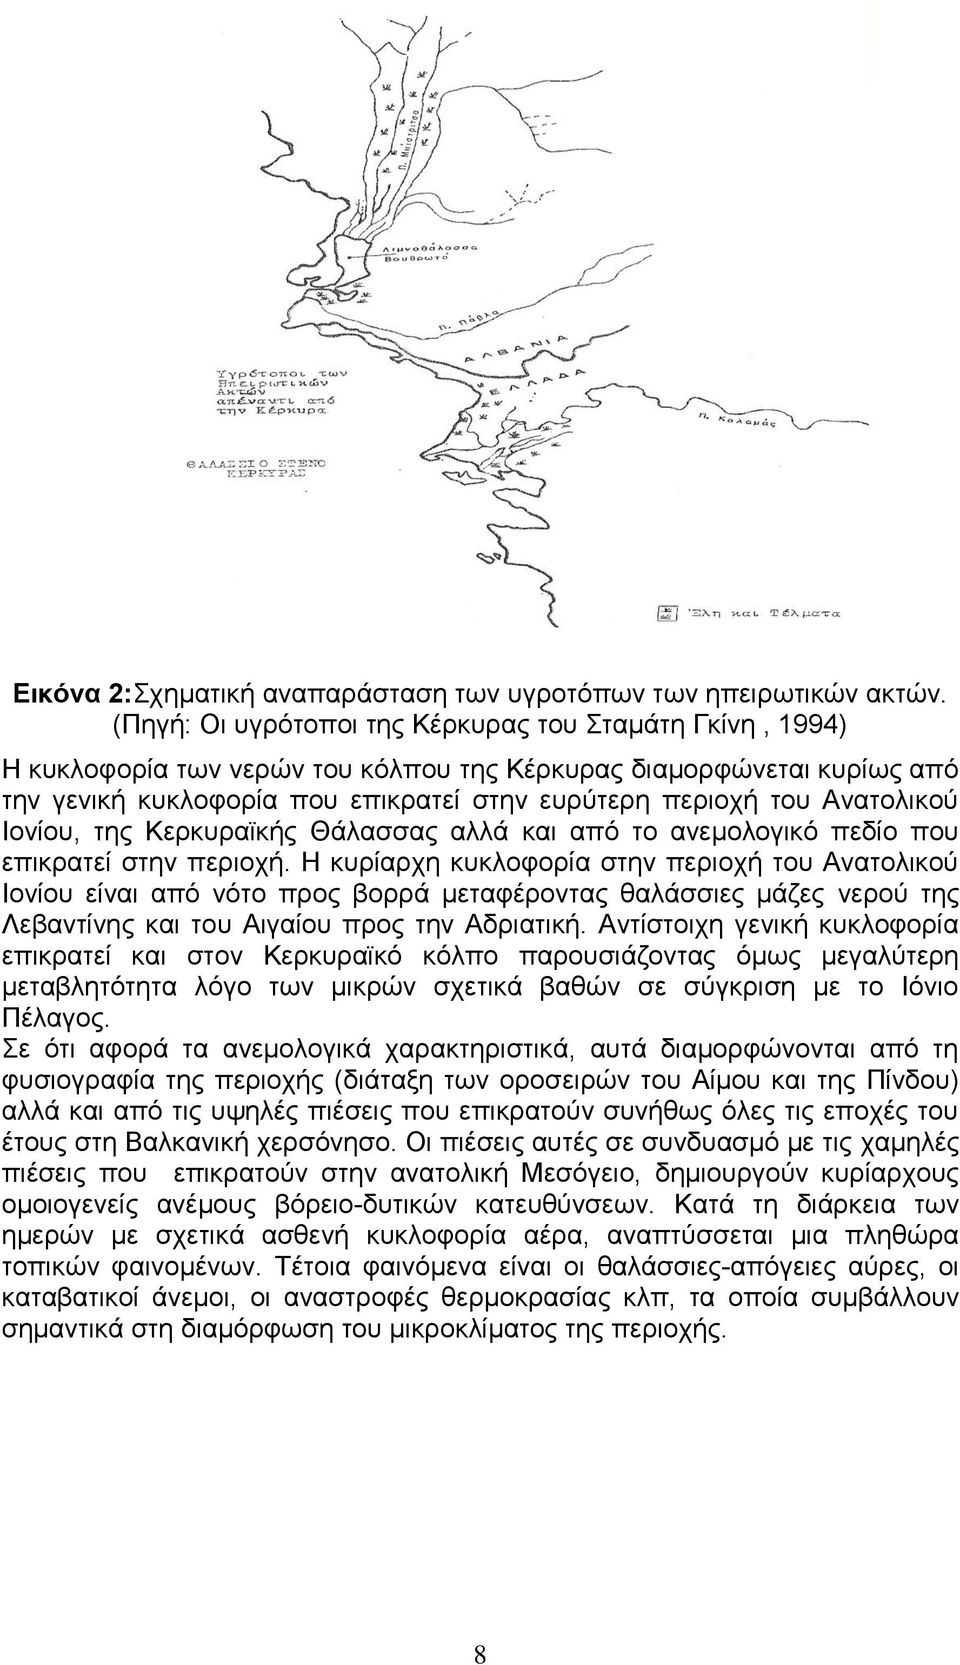 Ανατολικού Ιονίου, της Κερκυραϊκής Θάλασσας αλλά και από το ανεμολογικό πεδίο που επικρατεί στην περιοχή.